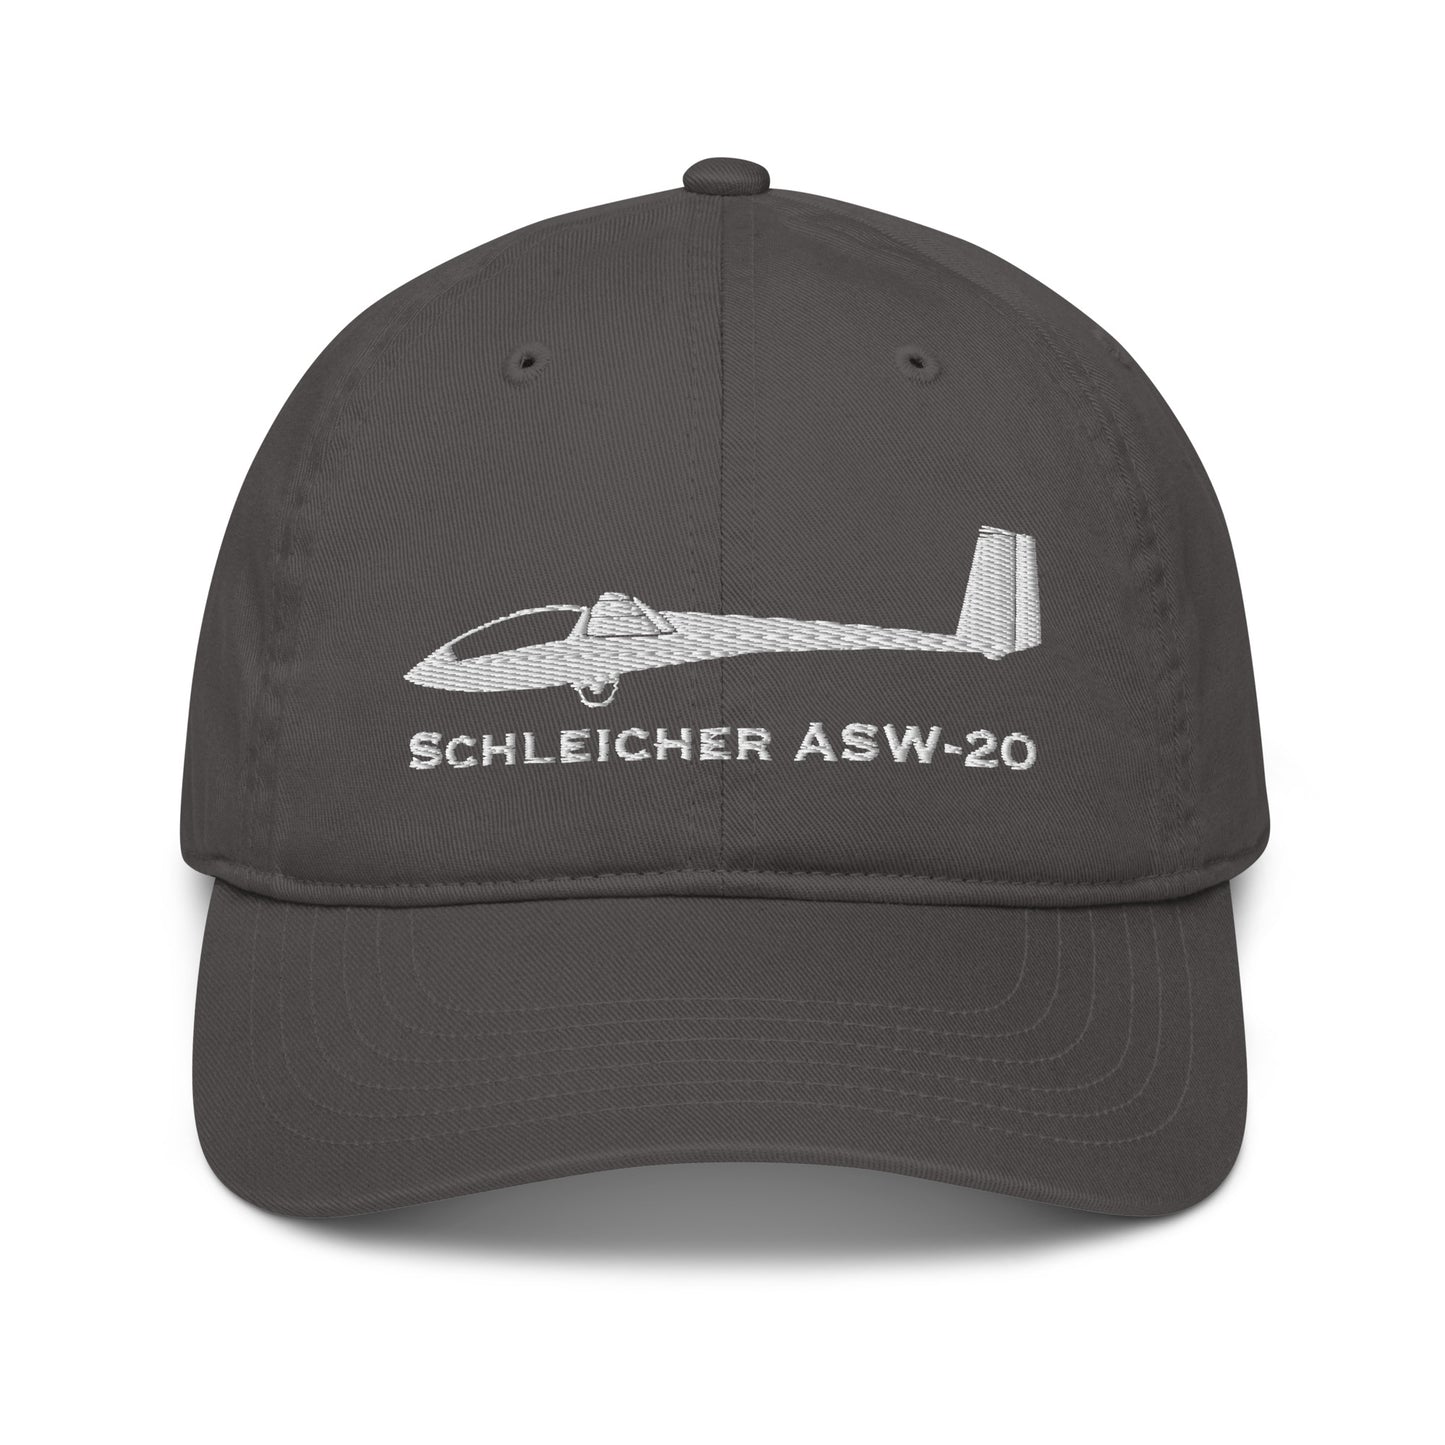 Schleicher ASW-20 Embroidered Airplane Hat